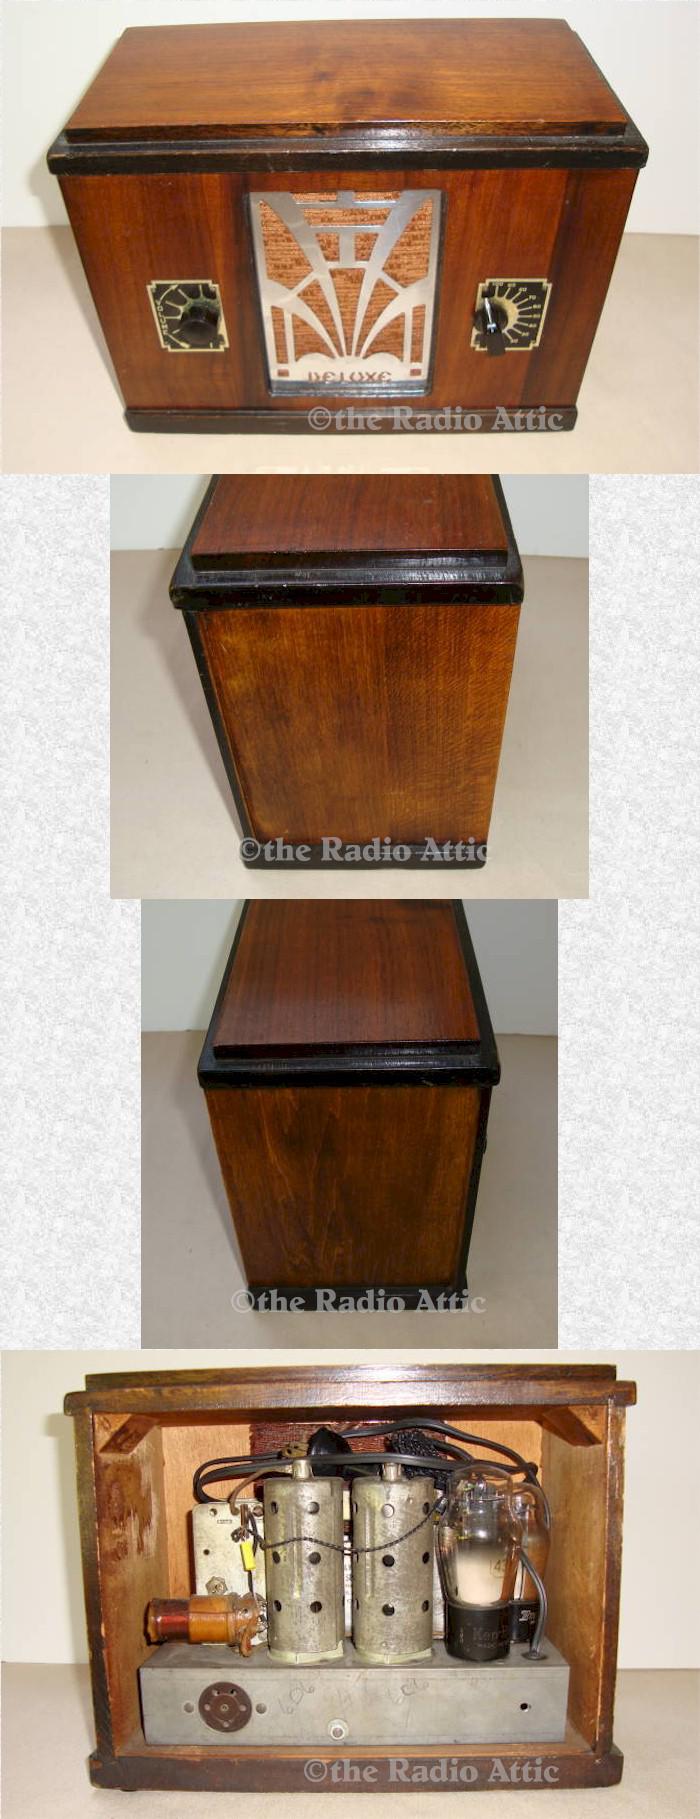 Deluxe Mantle Radio (1930s)